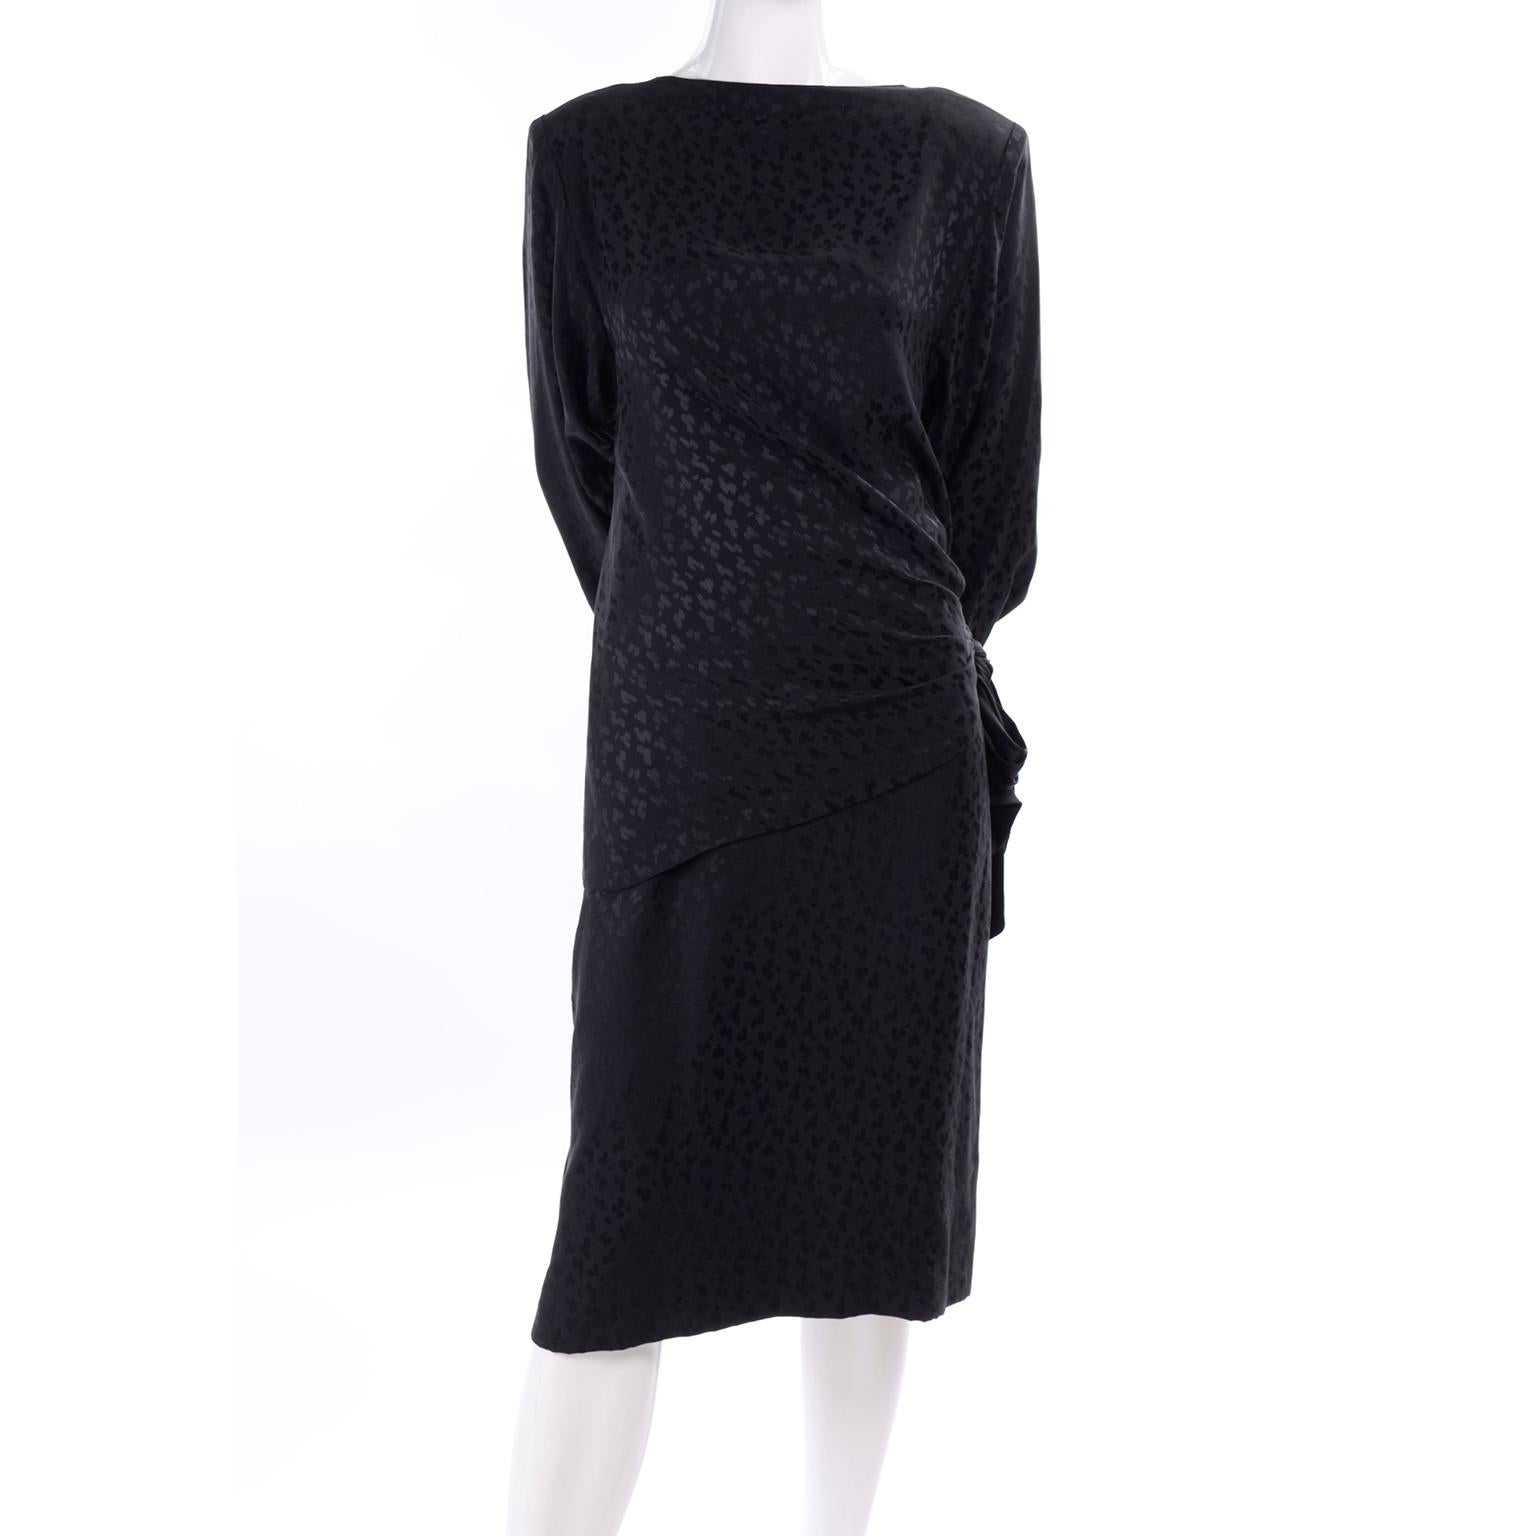 Dies ist eine fabelhafte Adolfo 2 Stück schwarzer Seide Kleid mit Bleistiftrock und Top aus den 1980er Jahren. Der schwarze Seidenstoff hat ein wunderschönes Ton in Ton gehaltenes Leopardenmuster. Das Oberteil hat einen dramatischen Faltenwurf an